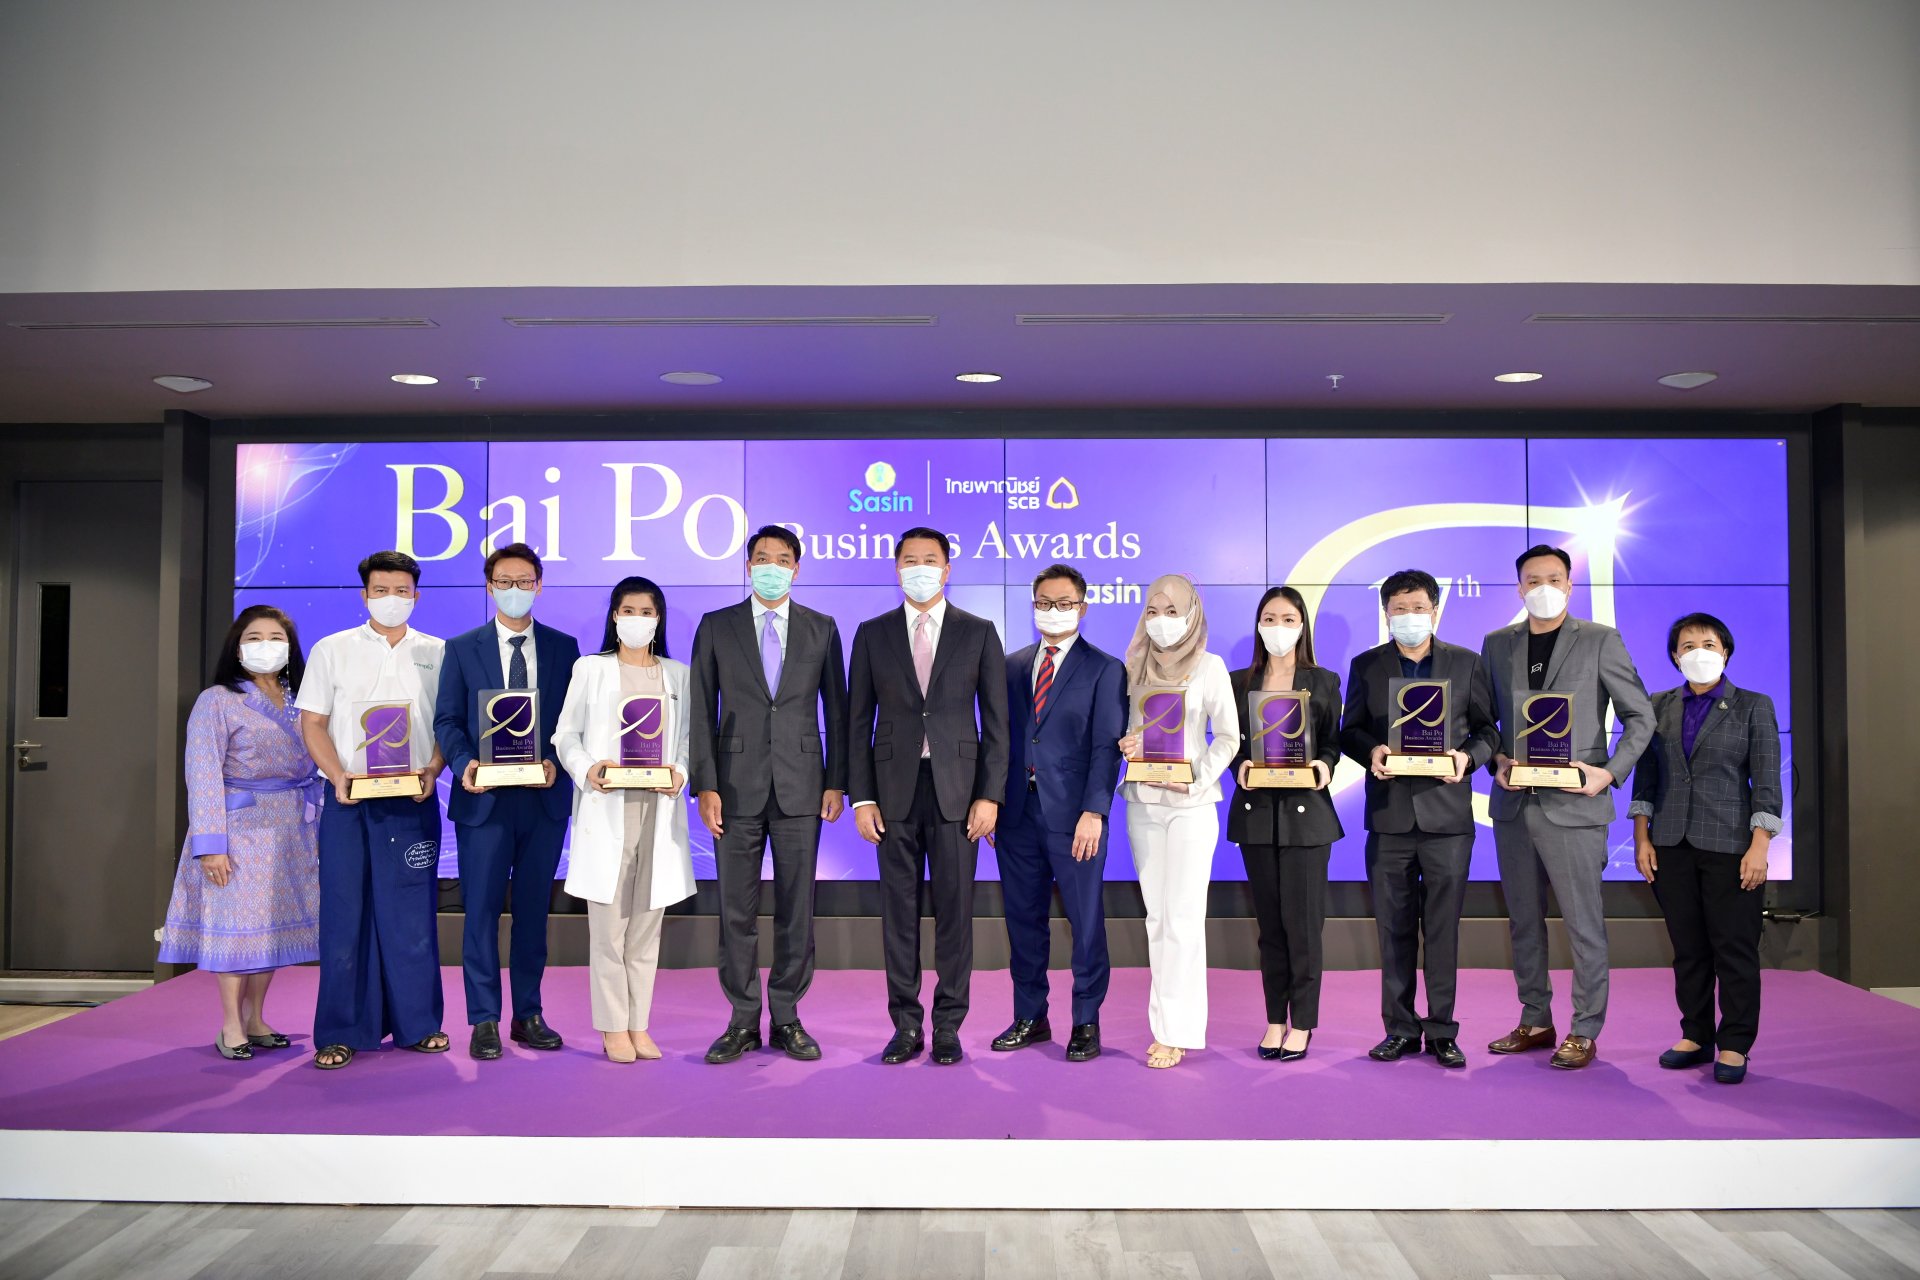 7 ธุรกิจเอสเอ็มอีไทย คว้ารางวัลเกียรติยศ Bai Po Business Awards ครั้งที่ 17